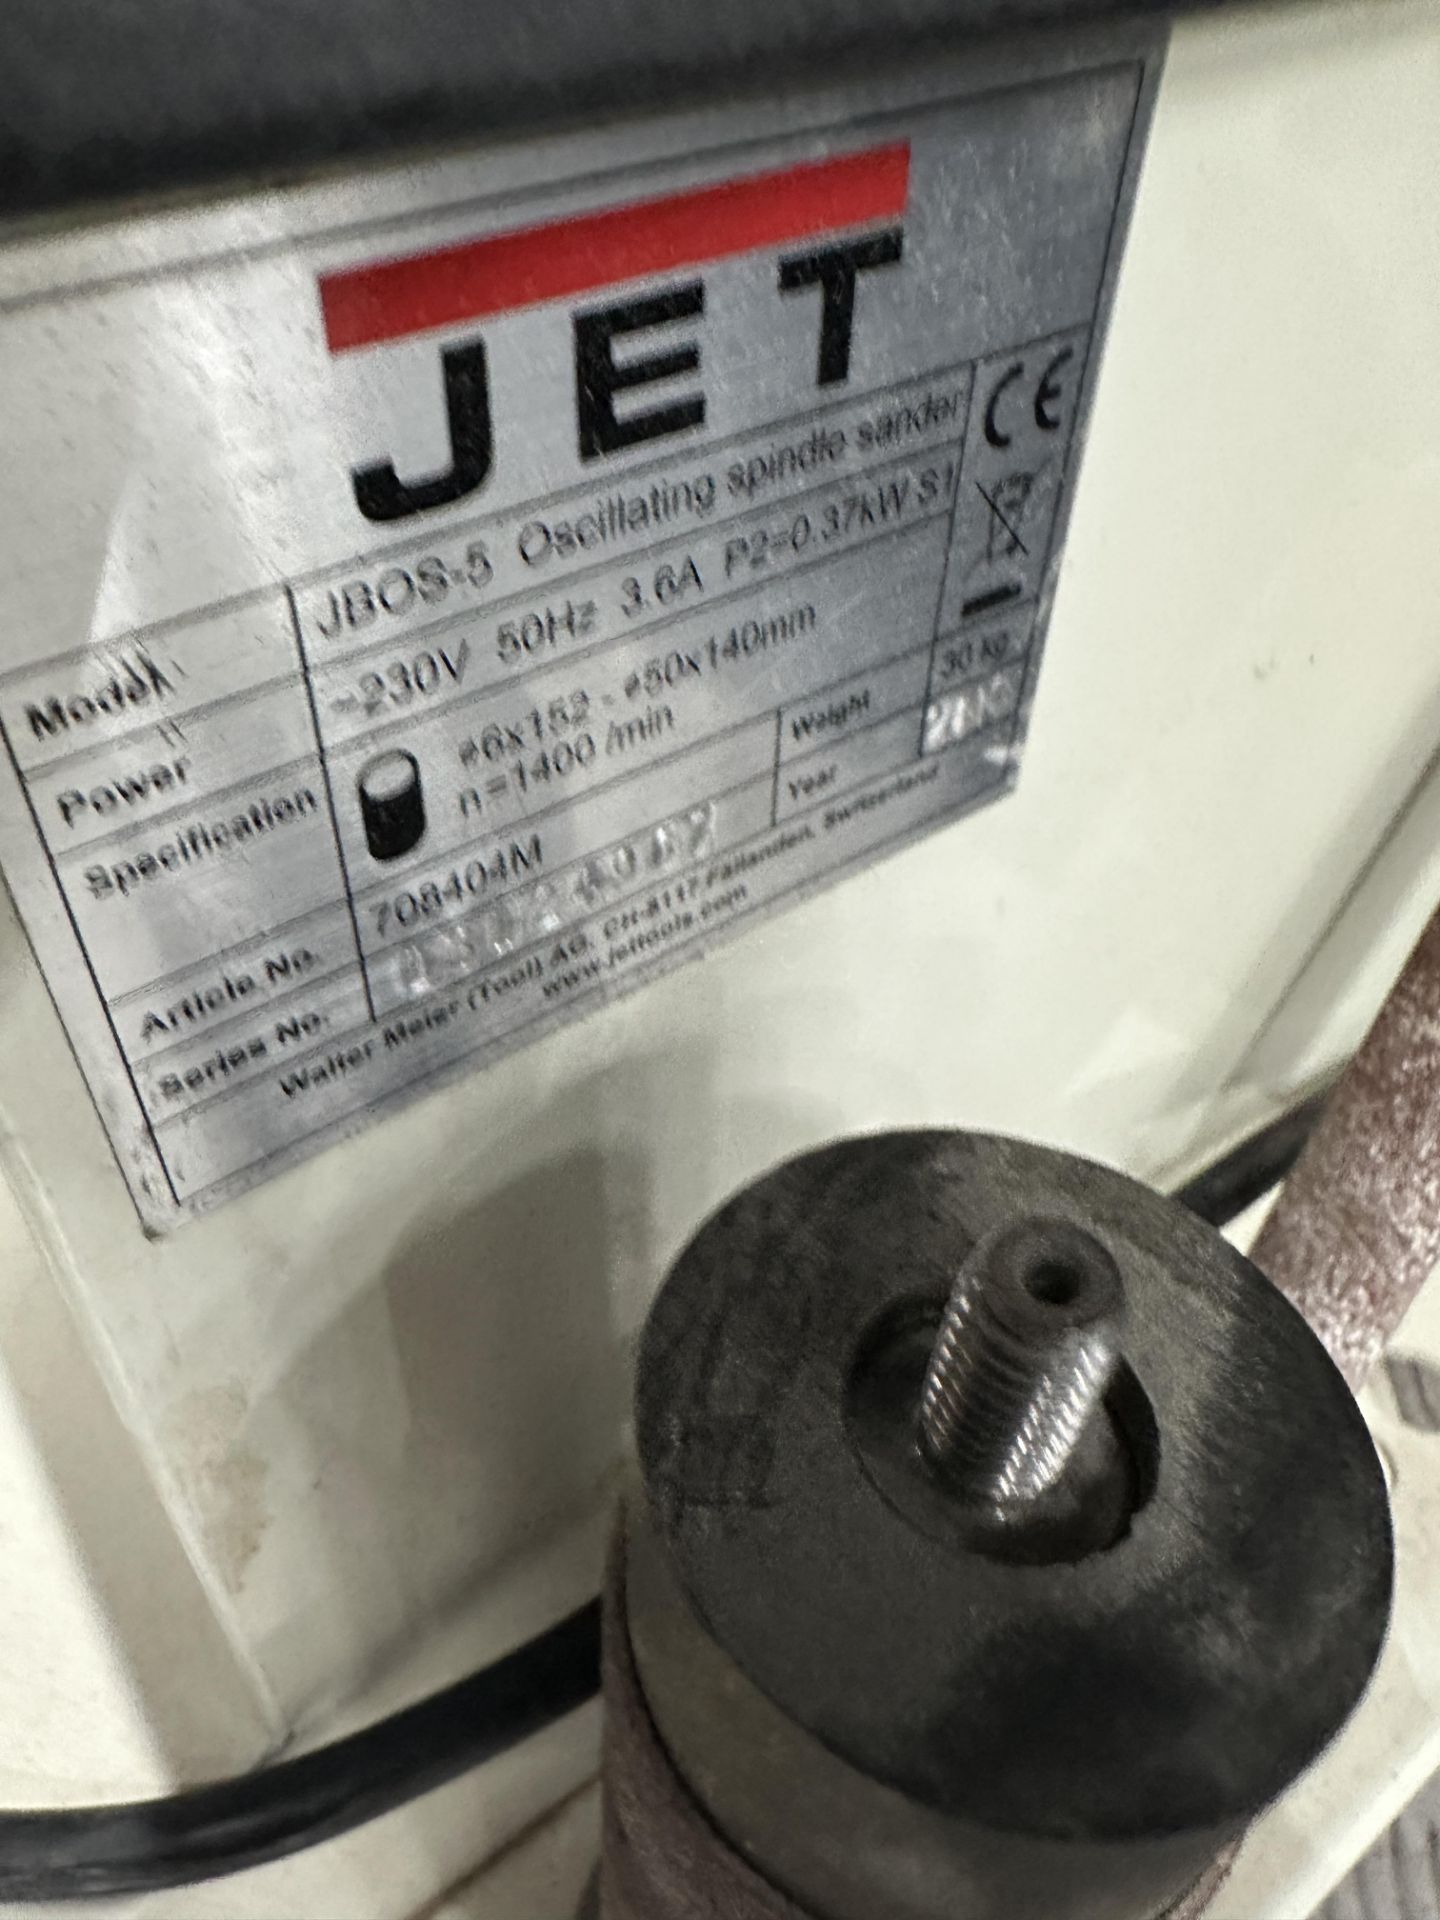 Jet JB0S 5 Oscillating spindle sander - Image 3 of 5